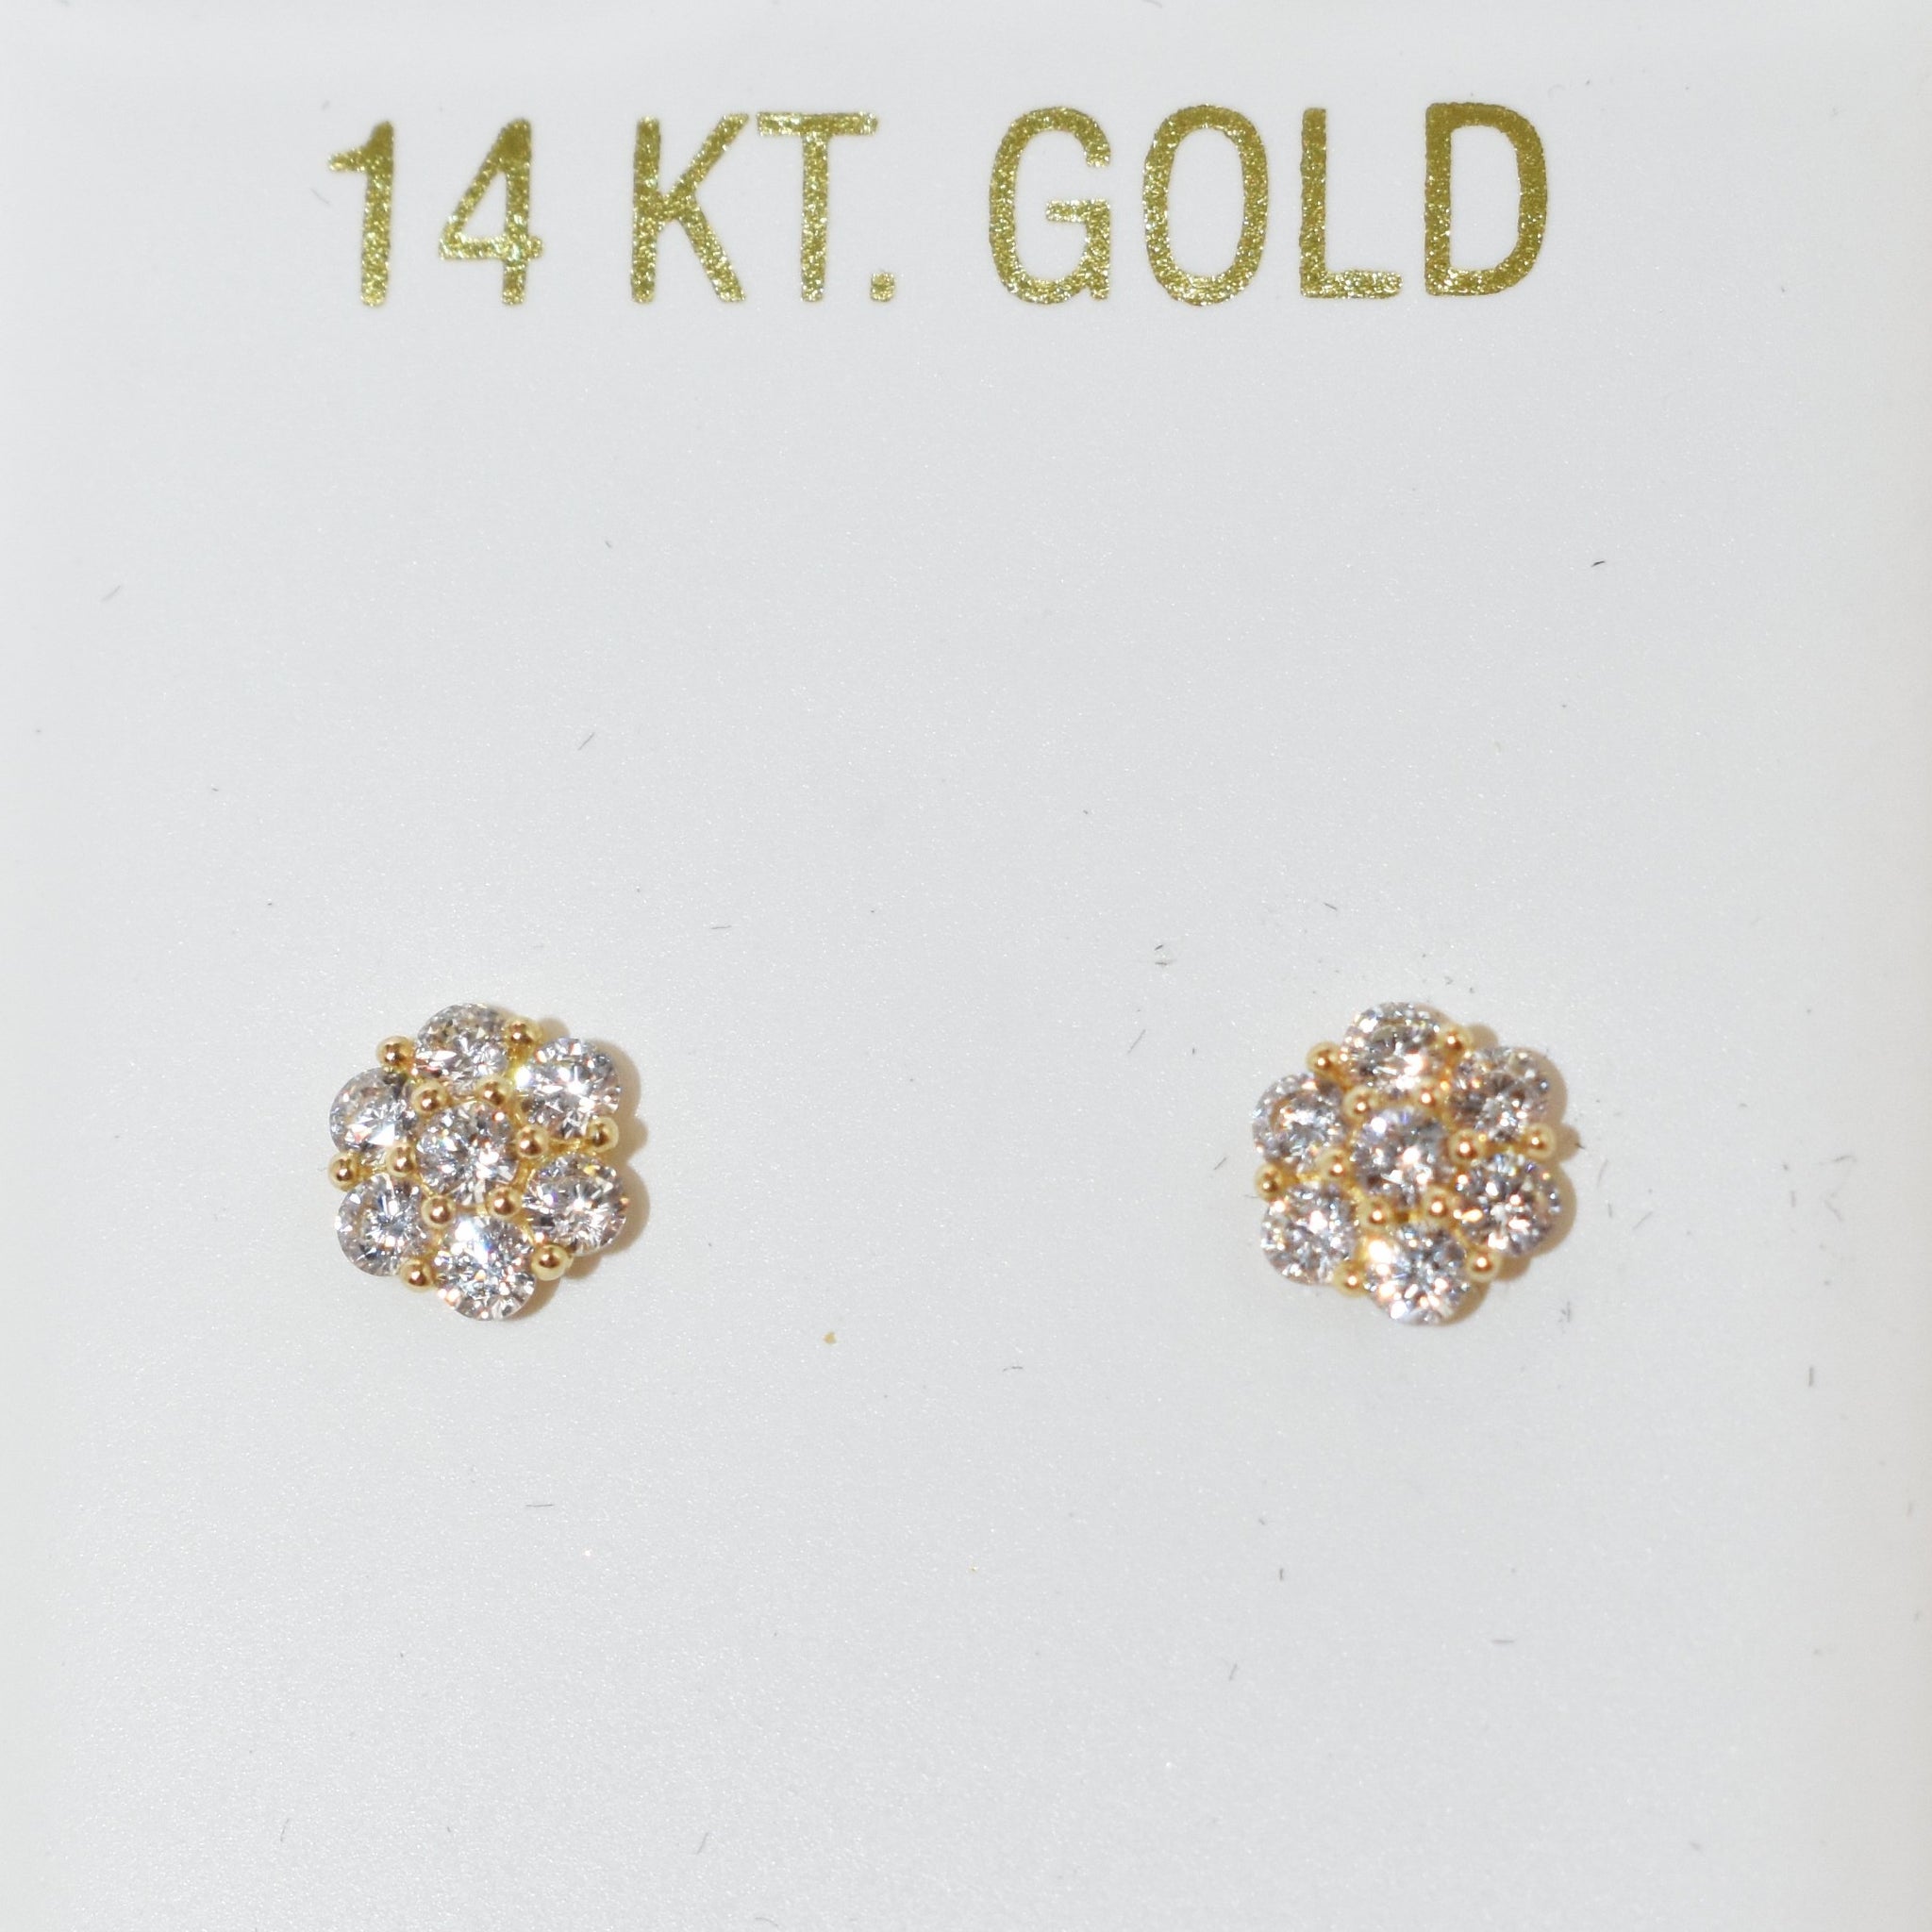 White Flower Earrings 14K Gold